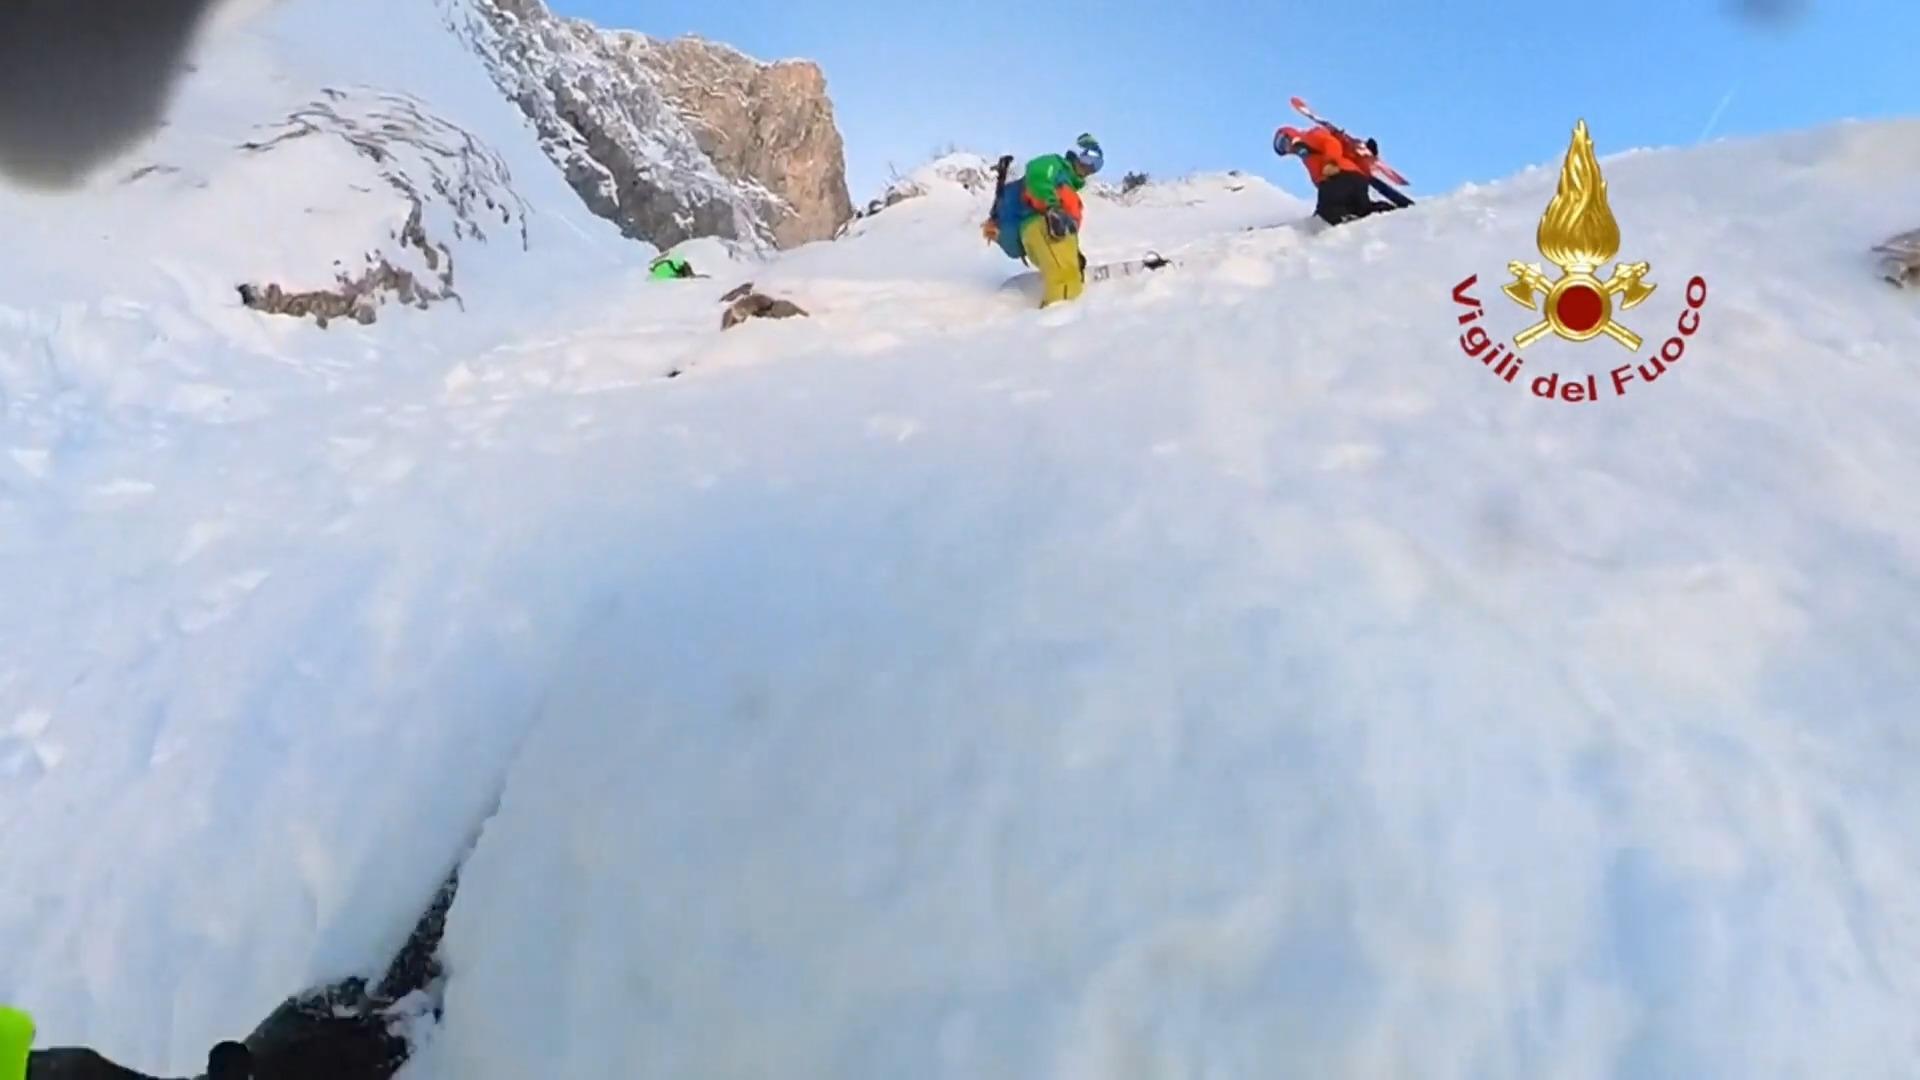 Nagle narciarze utknęli na górze, ekscytujący materiał filmowy